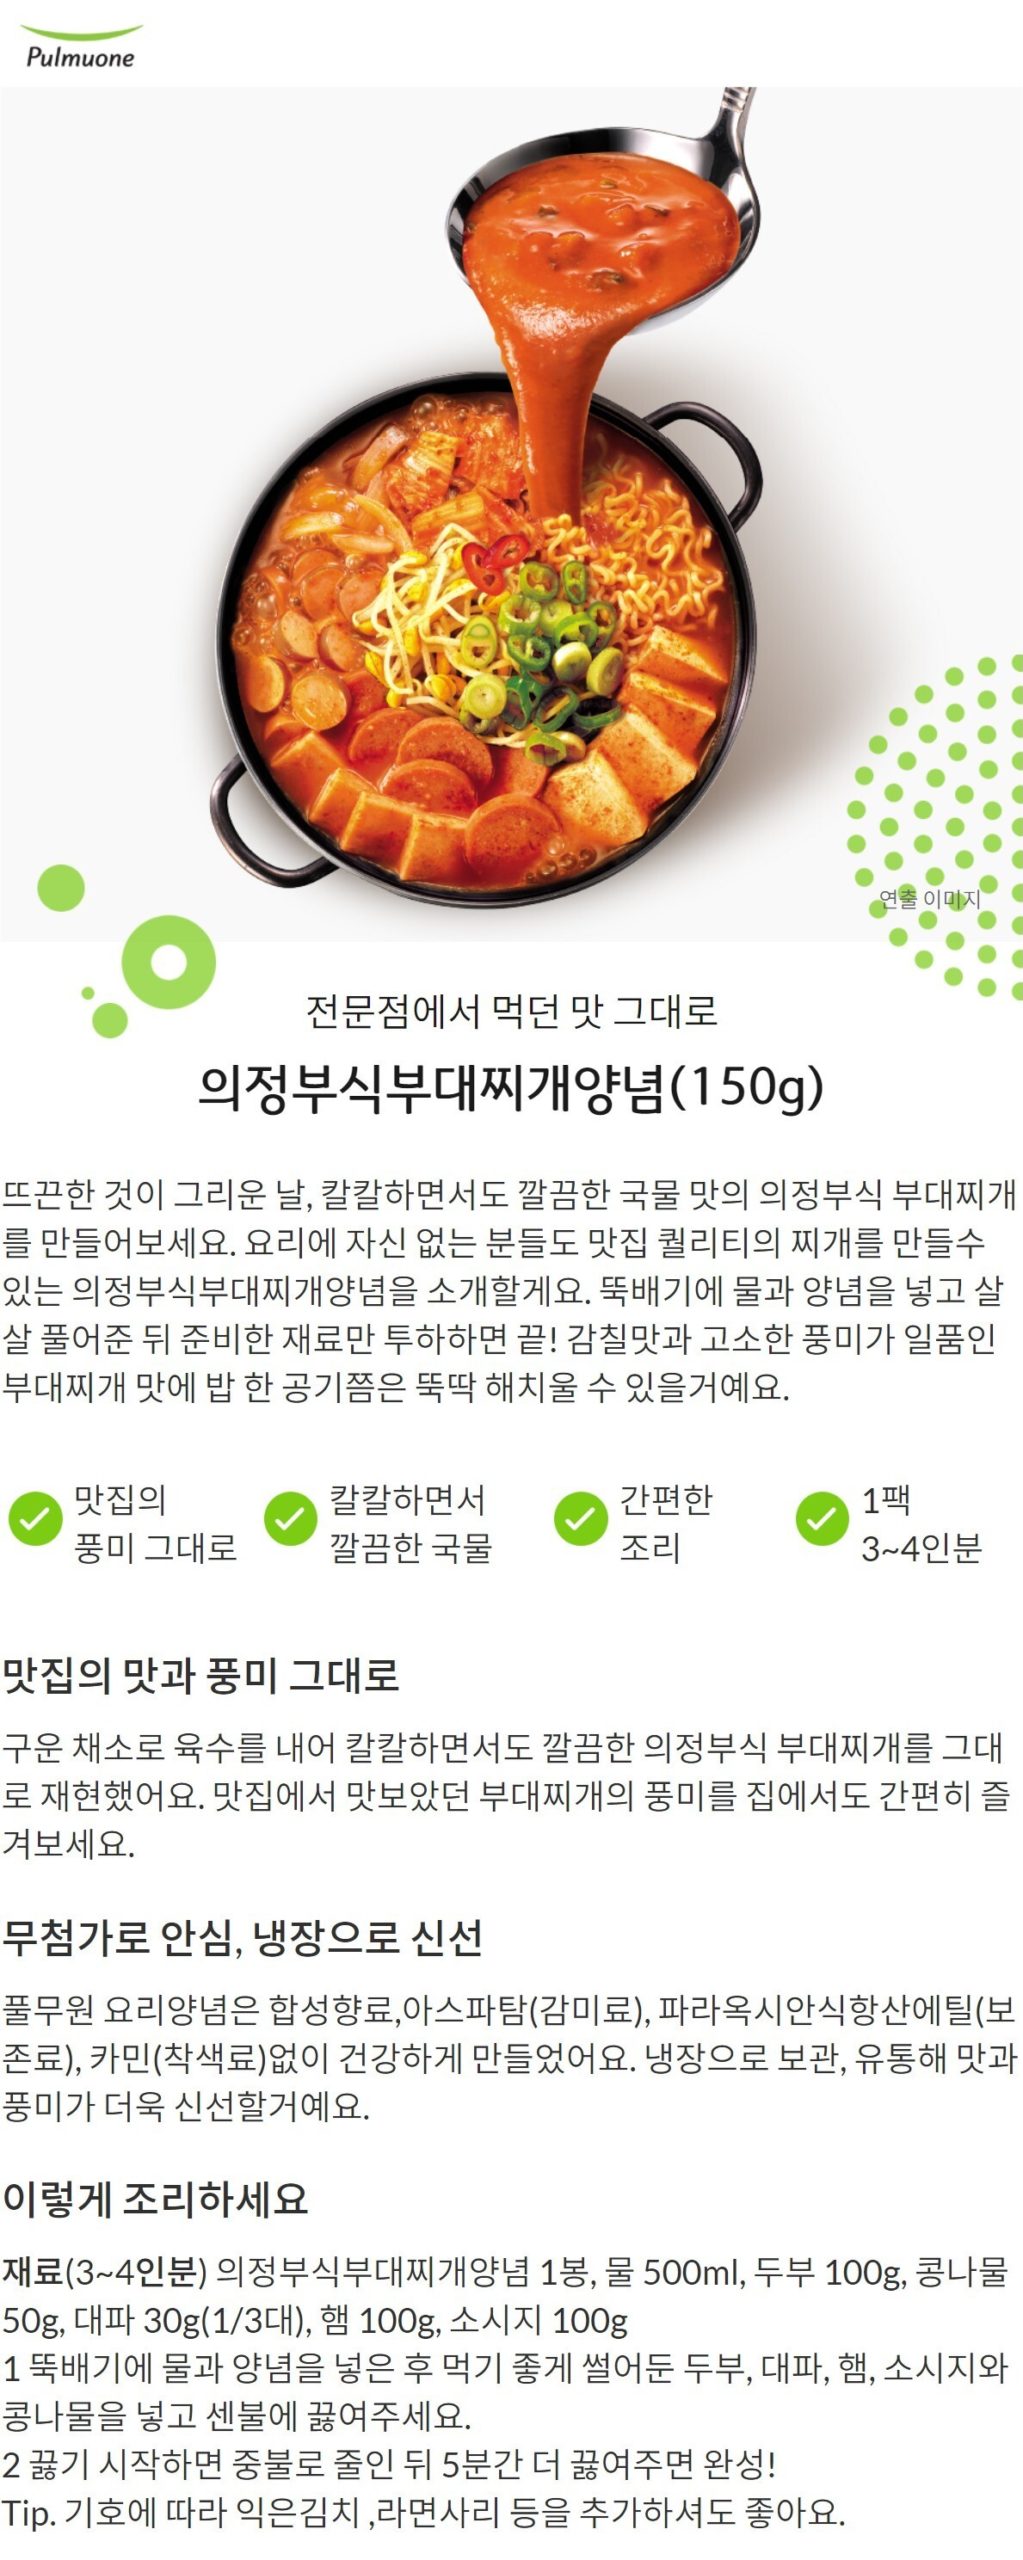 韓國食品-[풀무원] 의정부식부대찌개양념 150g